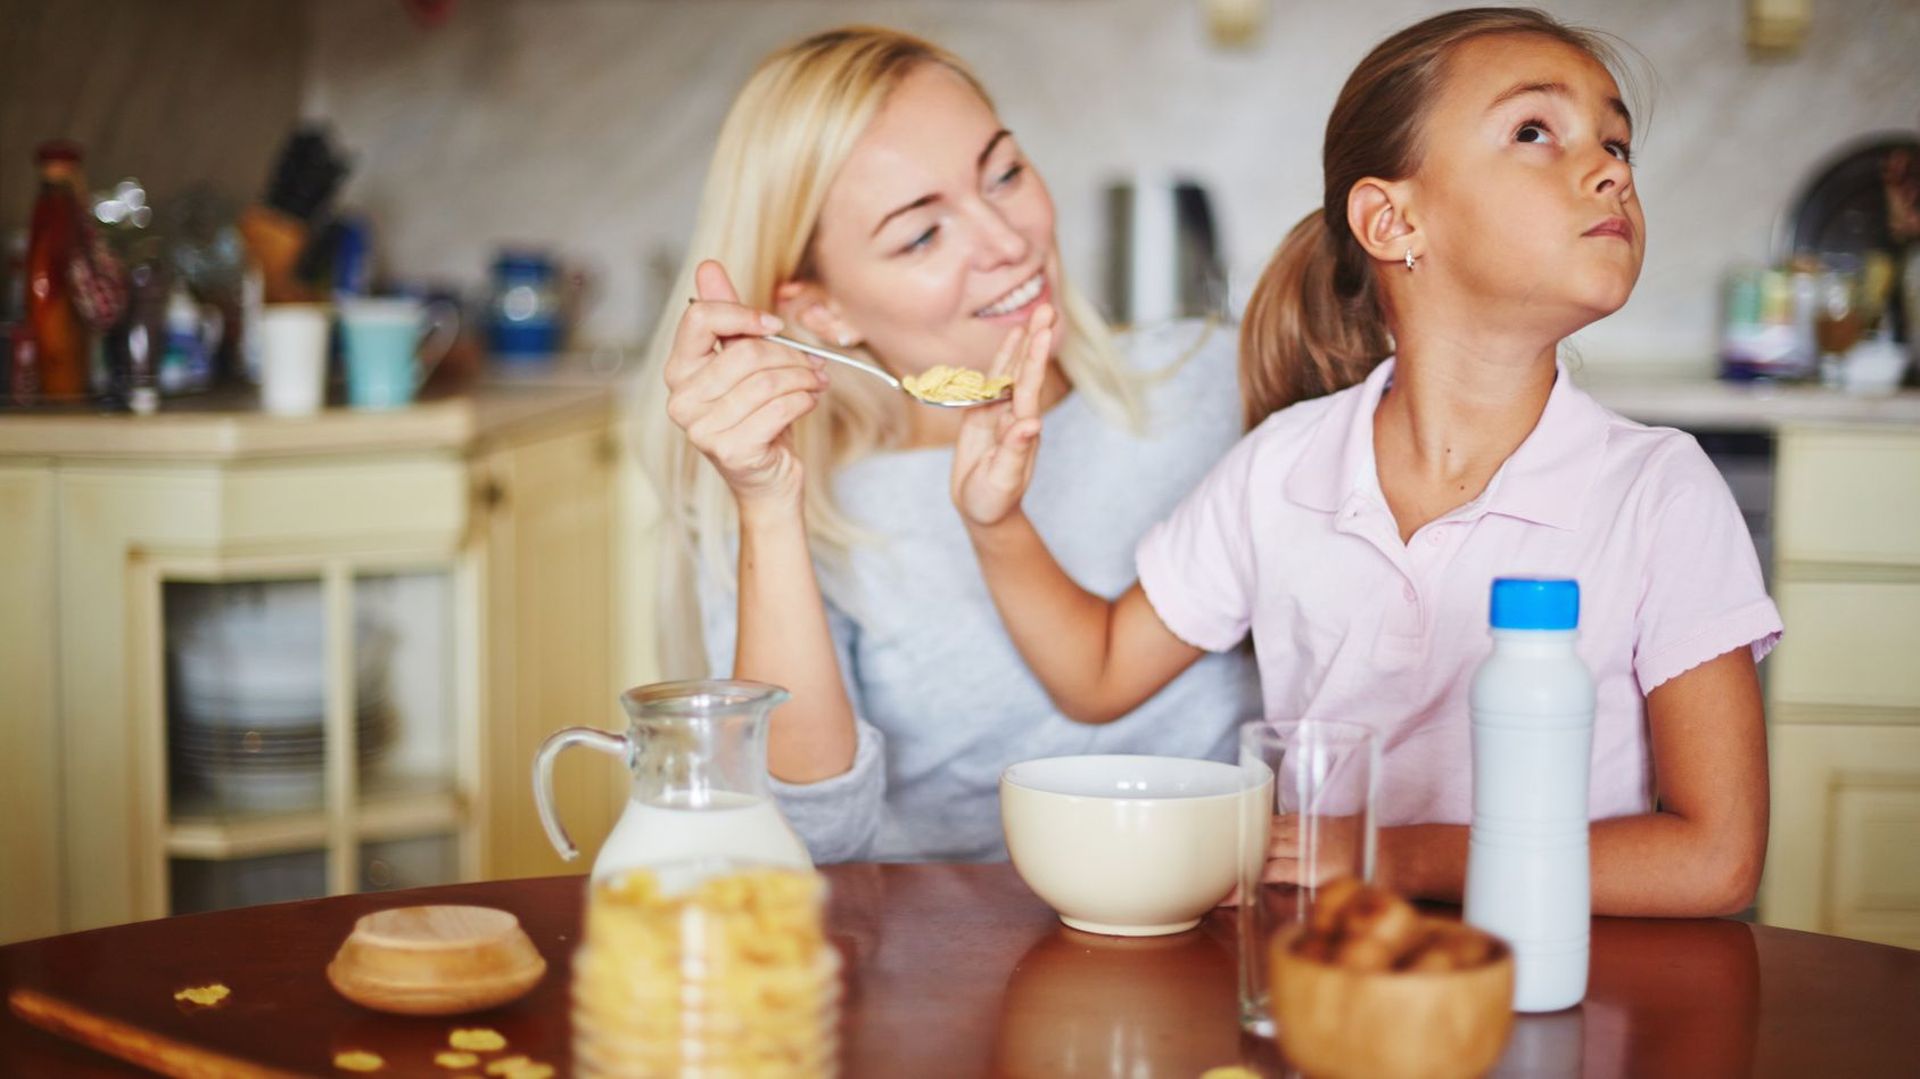 comment-nos-parents-influencent-ils-notre-relation-a-la-nourriture